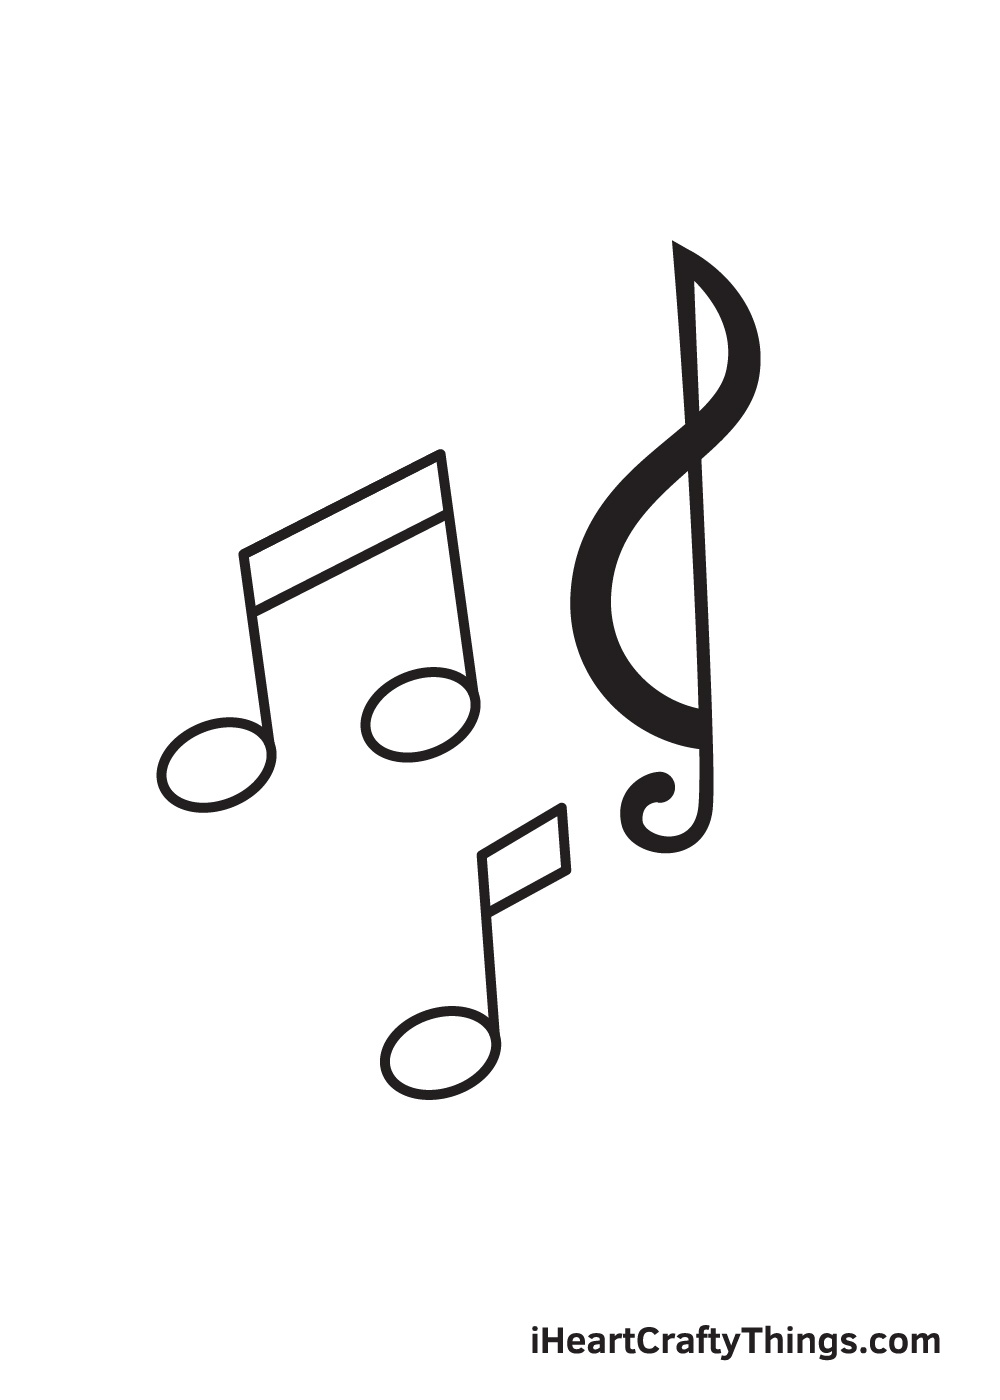 Music Notes DRAWING – STEP 8 - Hướng dẫn chi tiết cách vẽ nốt nhạc đơn giản với 9 bước cơ bản ai cũng làm được